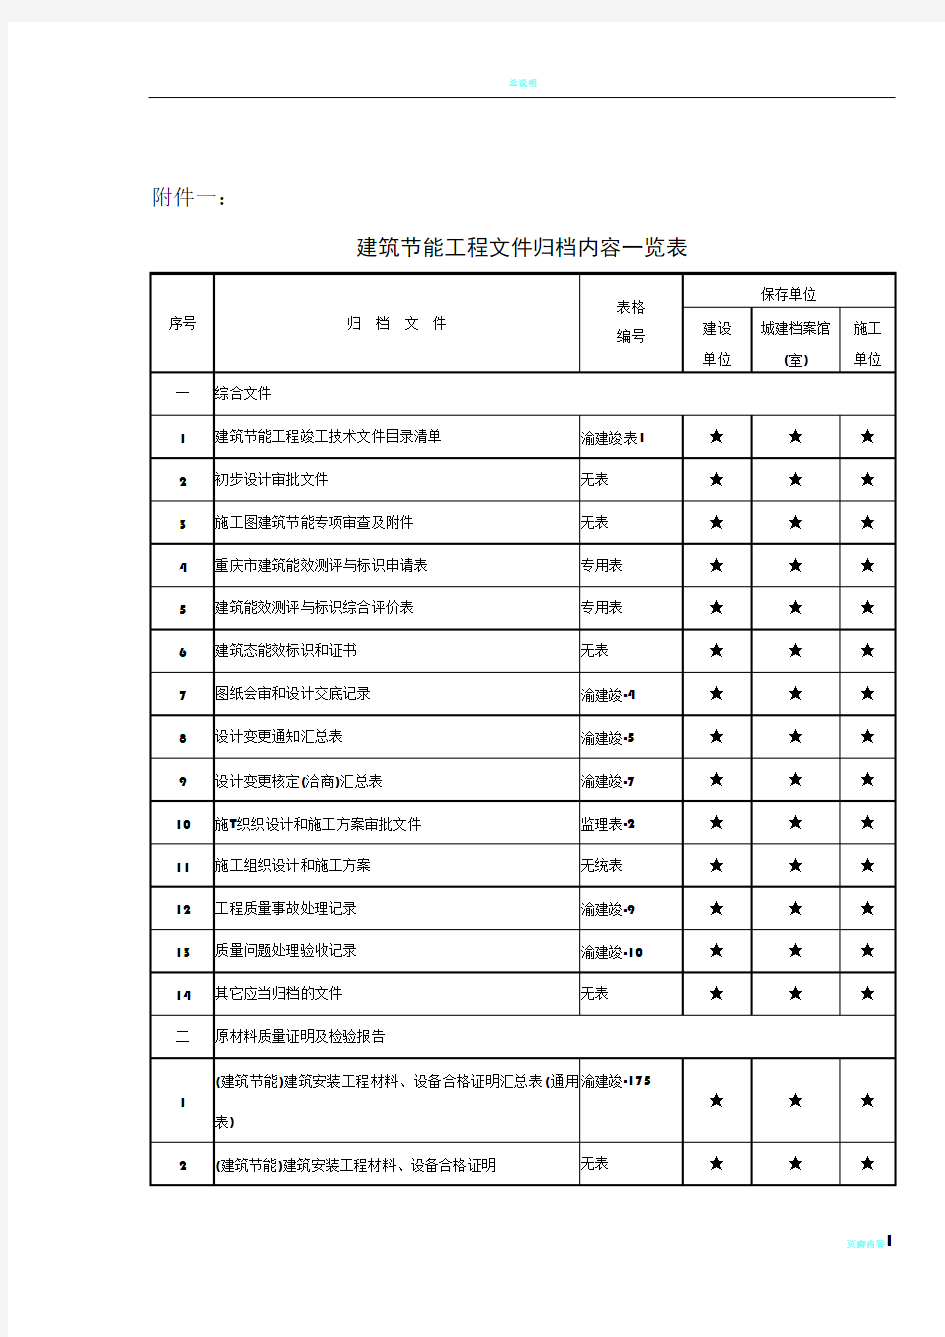 重庆市建筑节能工程文件归档内容一览表